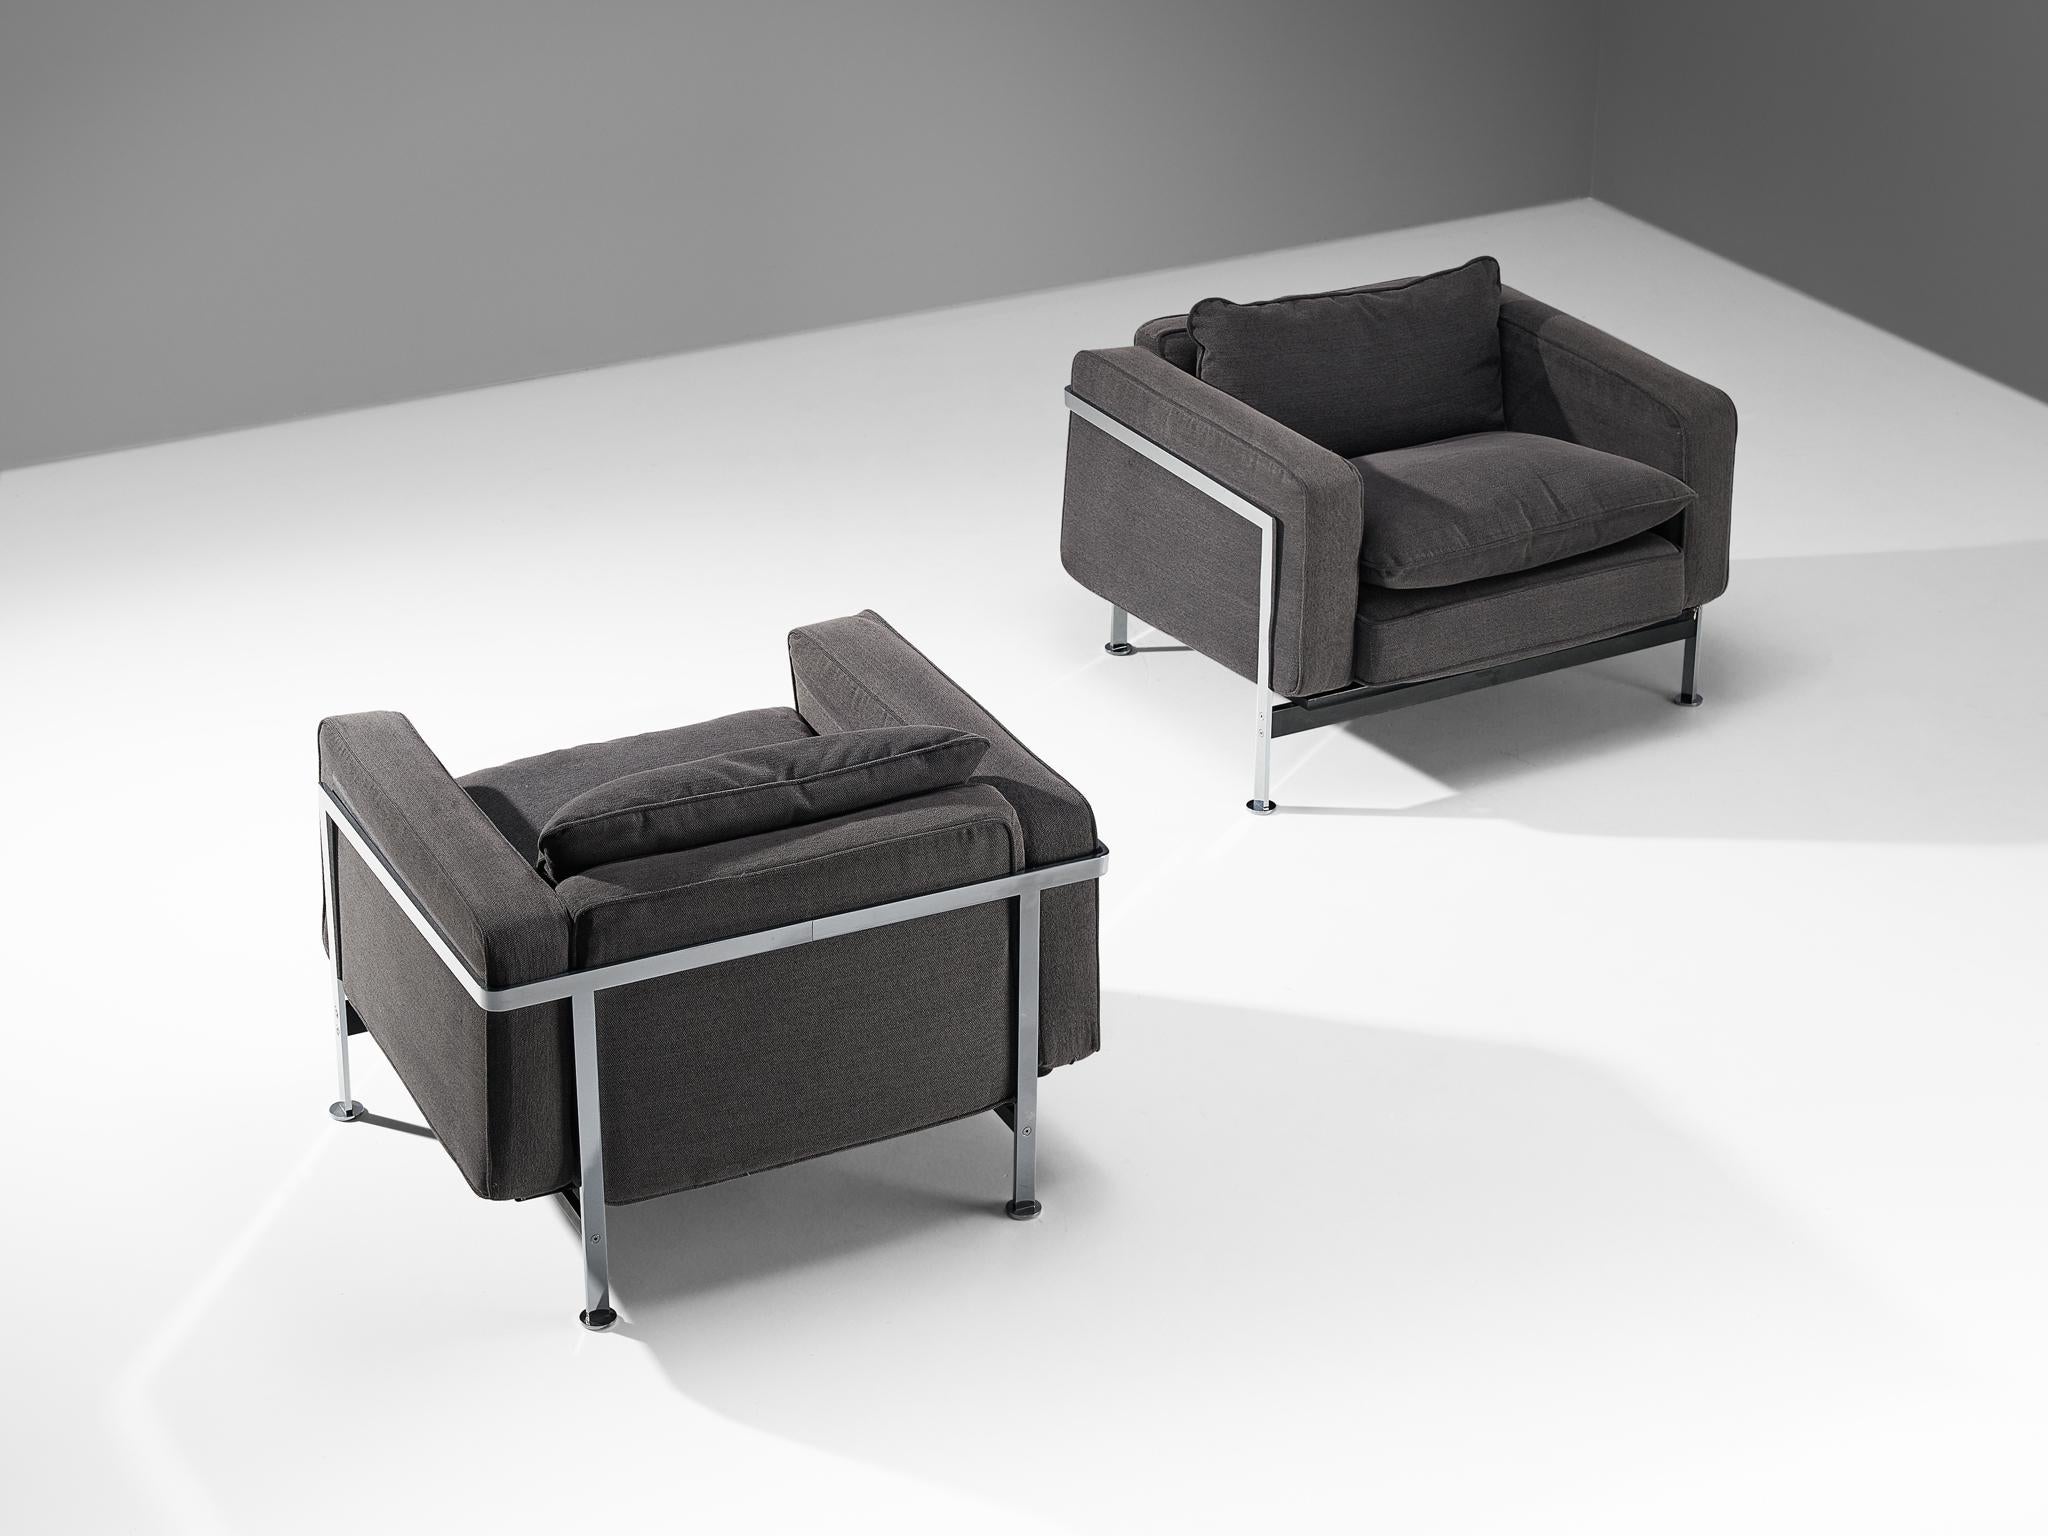 Robert Hausmann pour De Sede, fauteuils, tissu, acier, Suisse, design 1954

Ce fauteuil confortable est conçu avec un cadre en fer chromé qui sert de panier pour les coussins à l'intérieur. Le dossier et le coussin d'assise épais offrent un